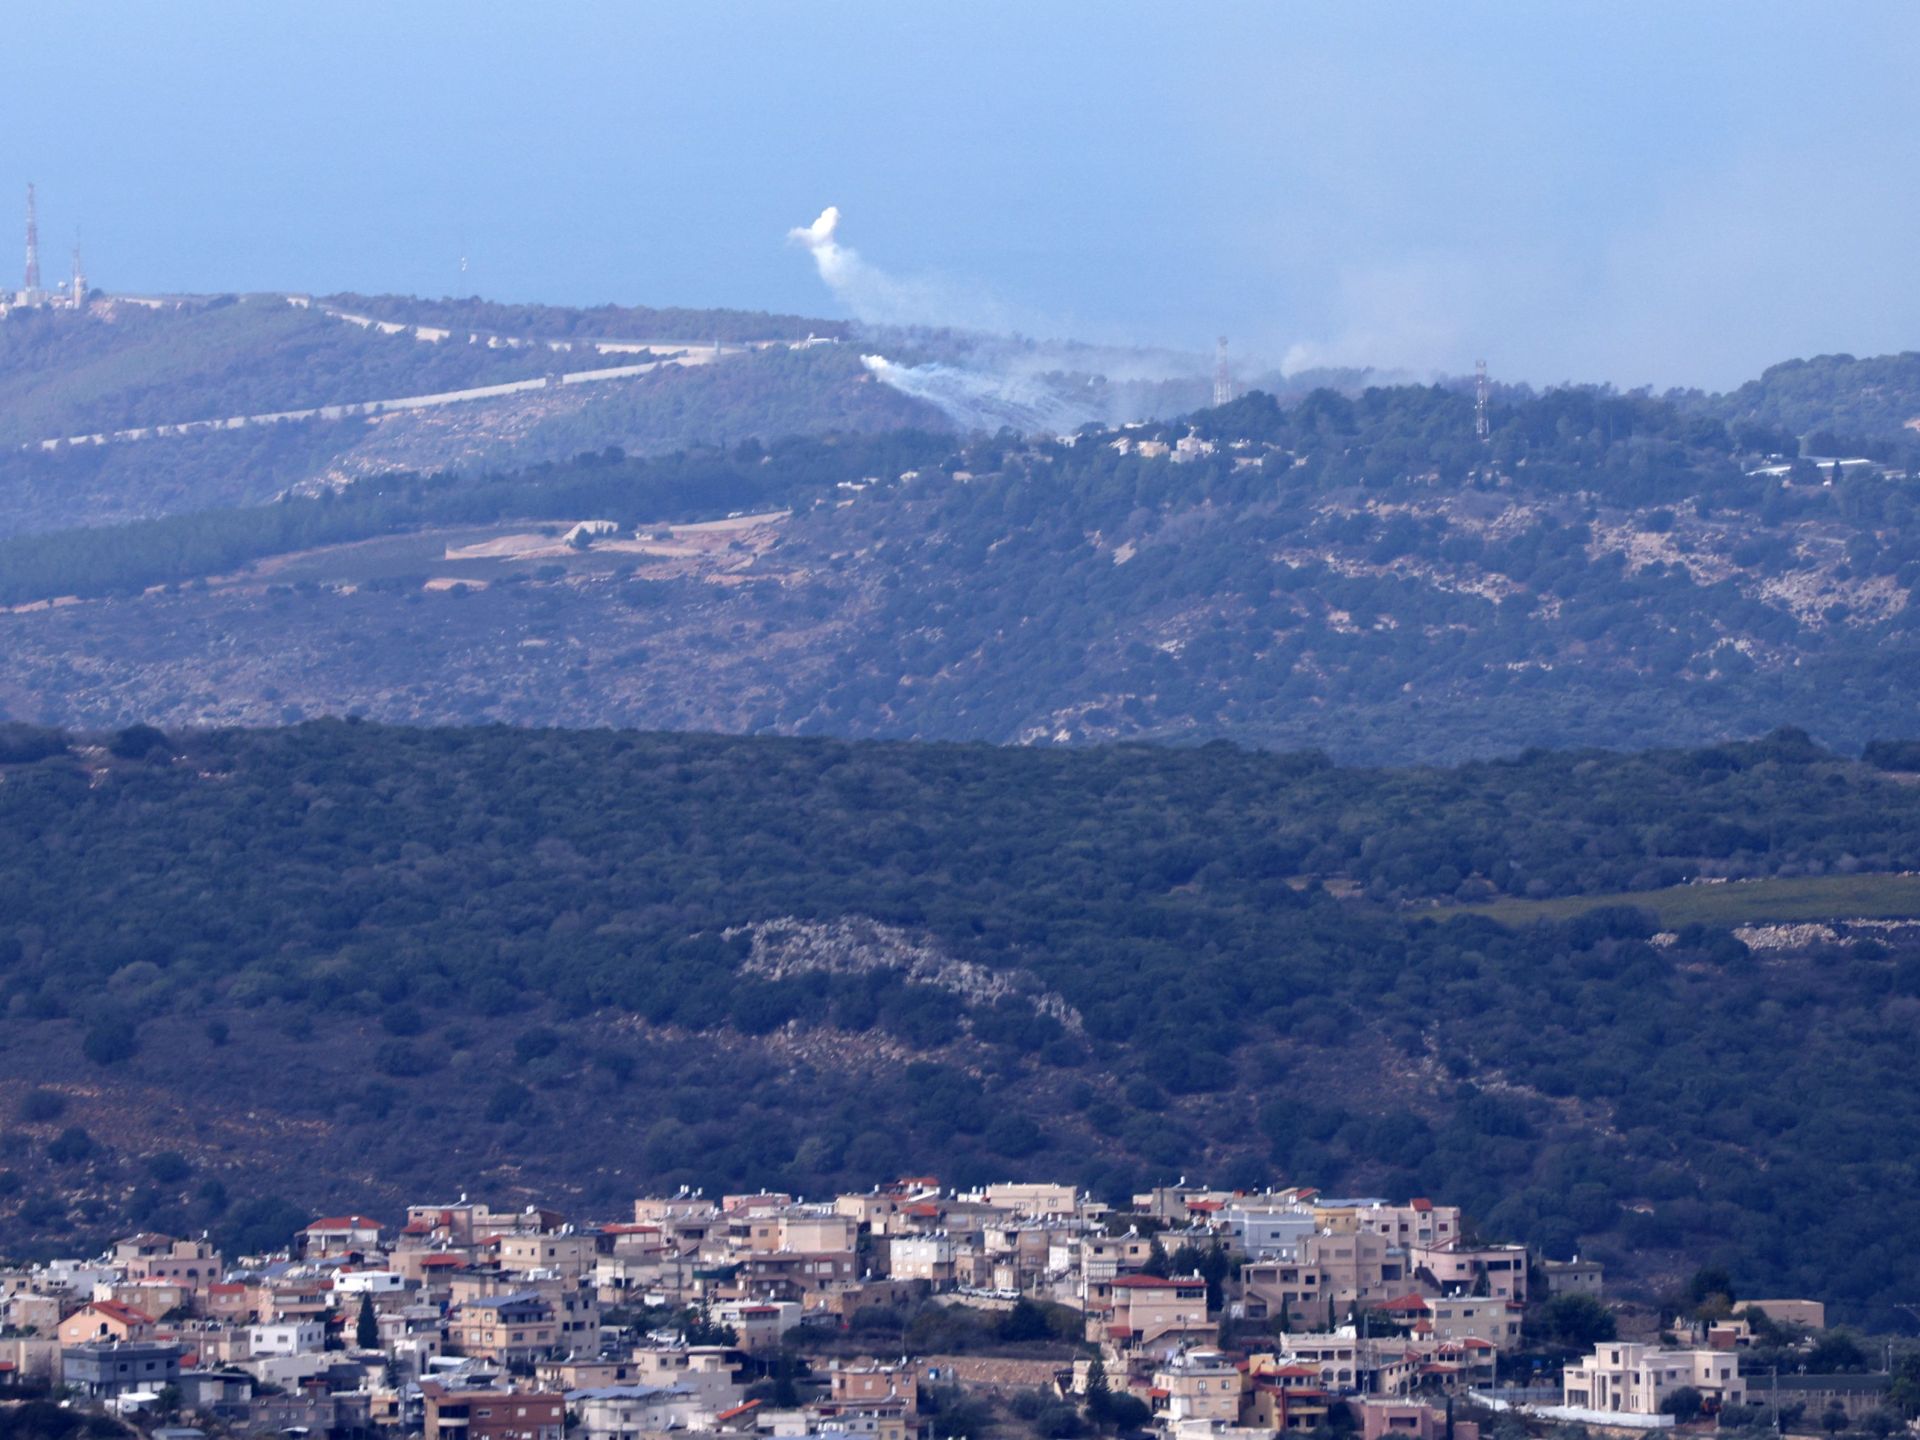 حزب الله يقصف ثكنات للاحتلال وغارات إسرائيلية على مواقع جنوبي لبنان | أخبار – البوكس نيوز